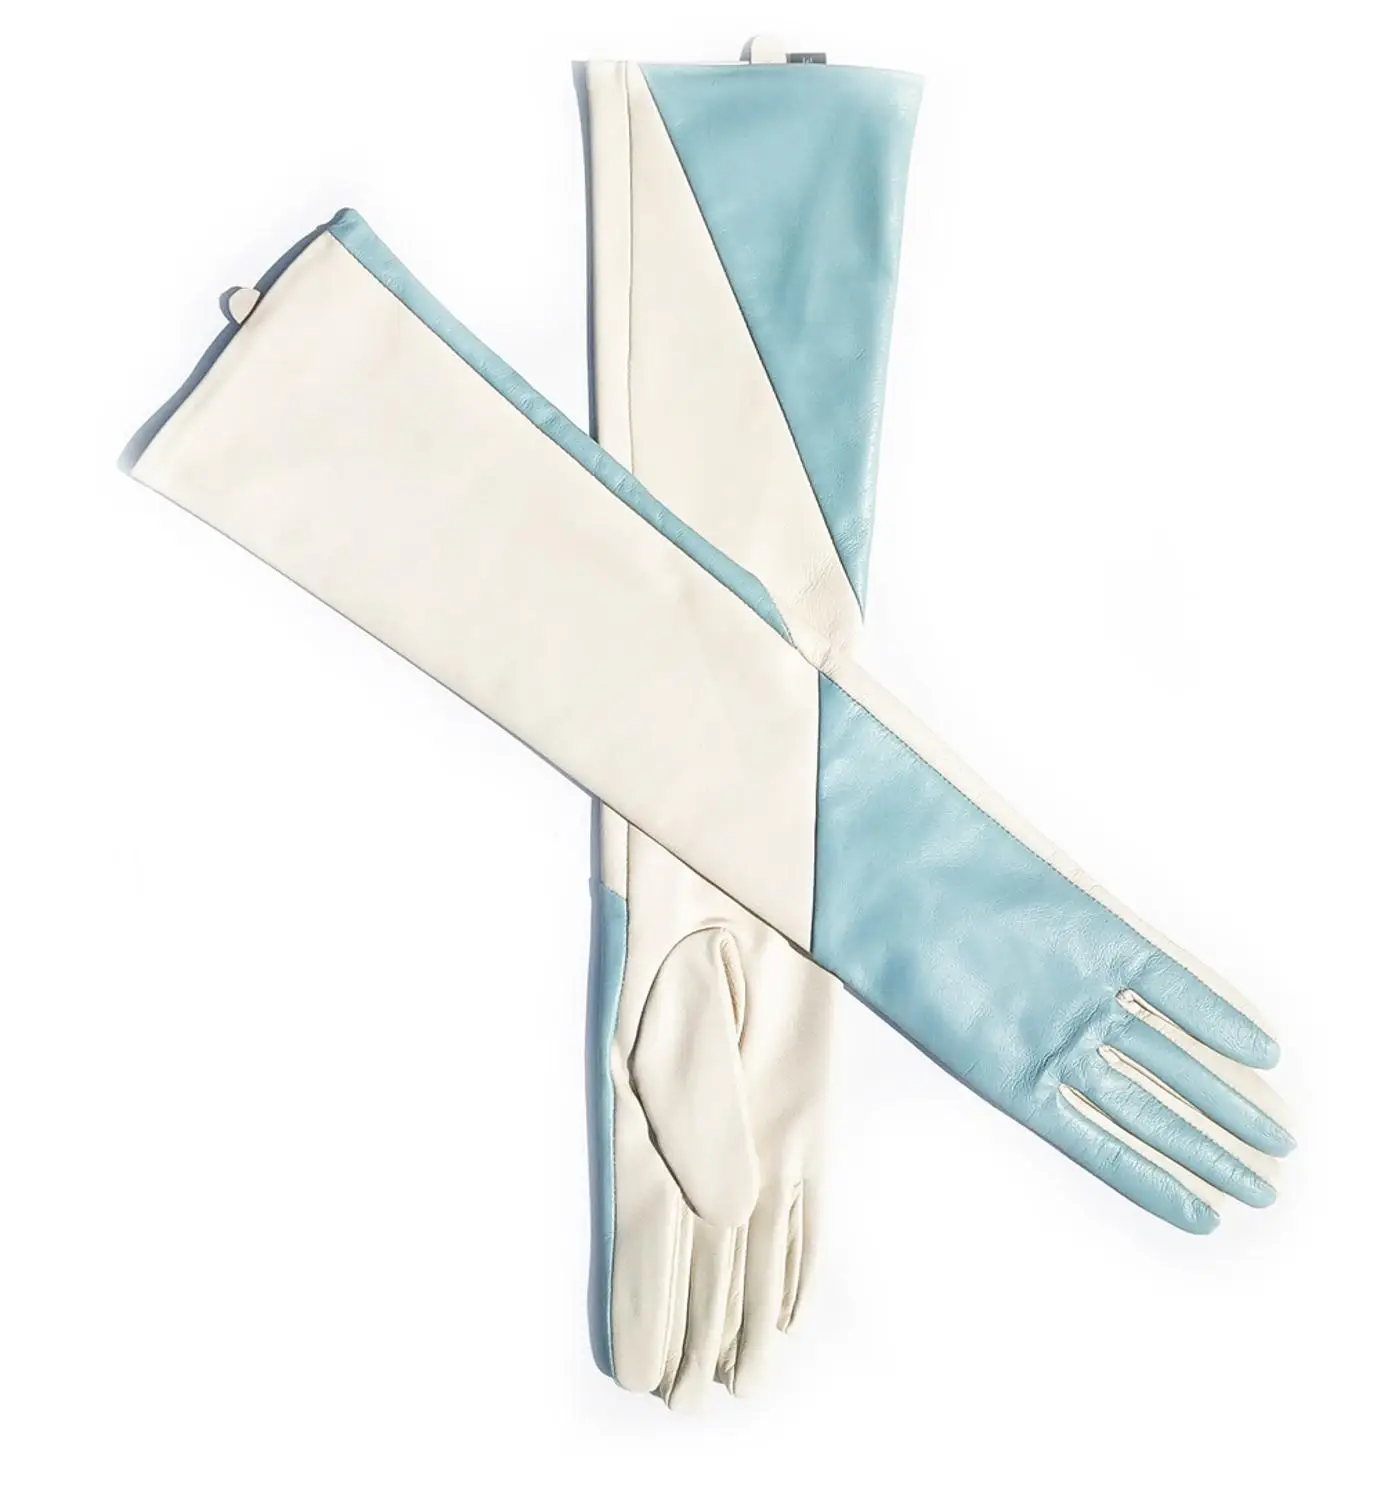 Женские кожаные перчатки, выполненные на заказ, длинные, косой, два цвета, светло-голубые и бежевые